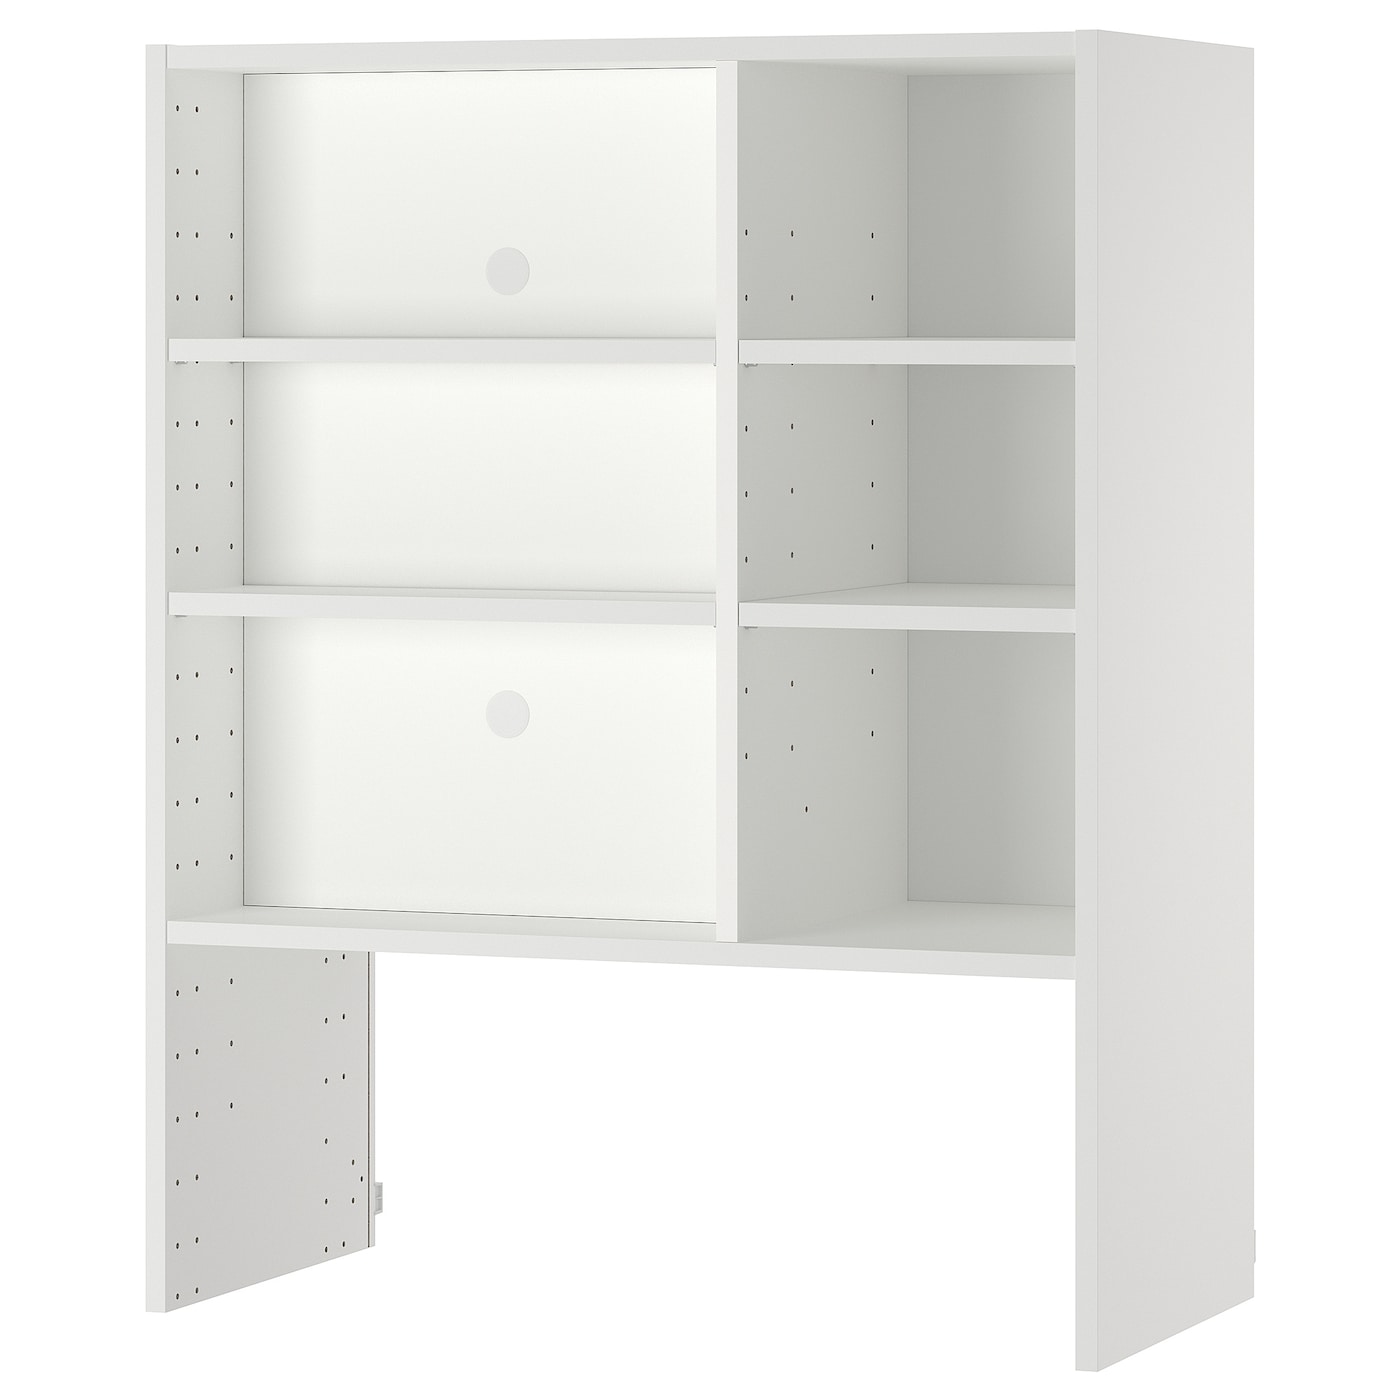 Шкафчик навесной для встроенной вытяжки -  METOD  IKEA/  МЕТОД ИКЕА, 100х80 см, белый